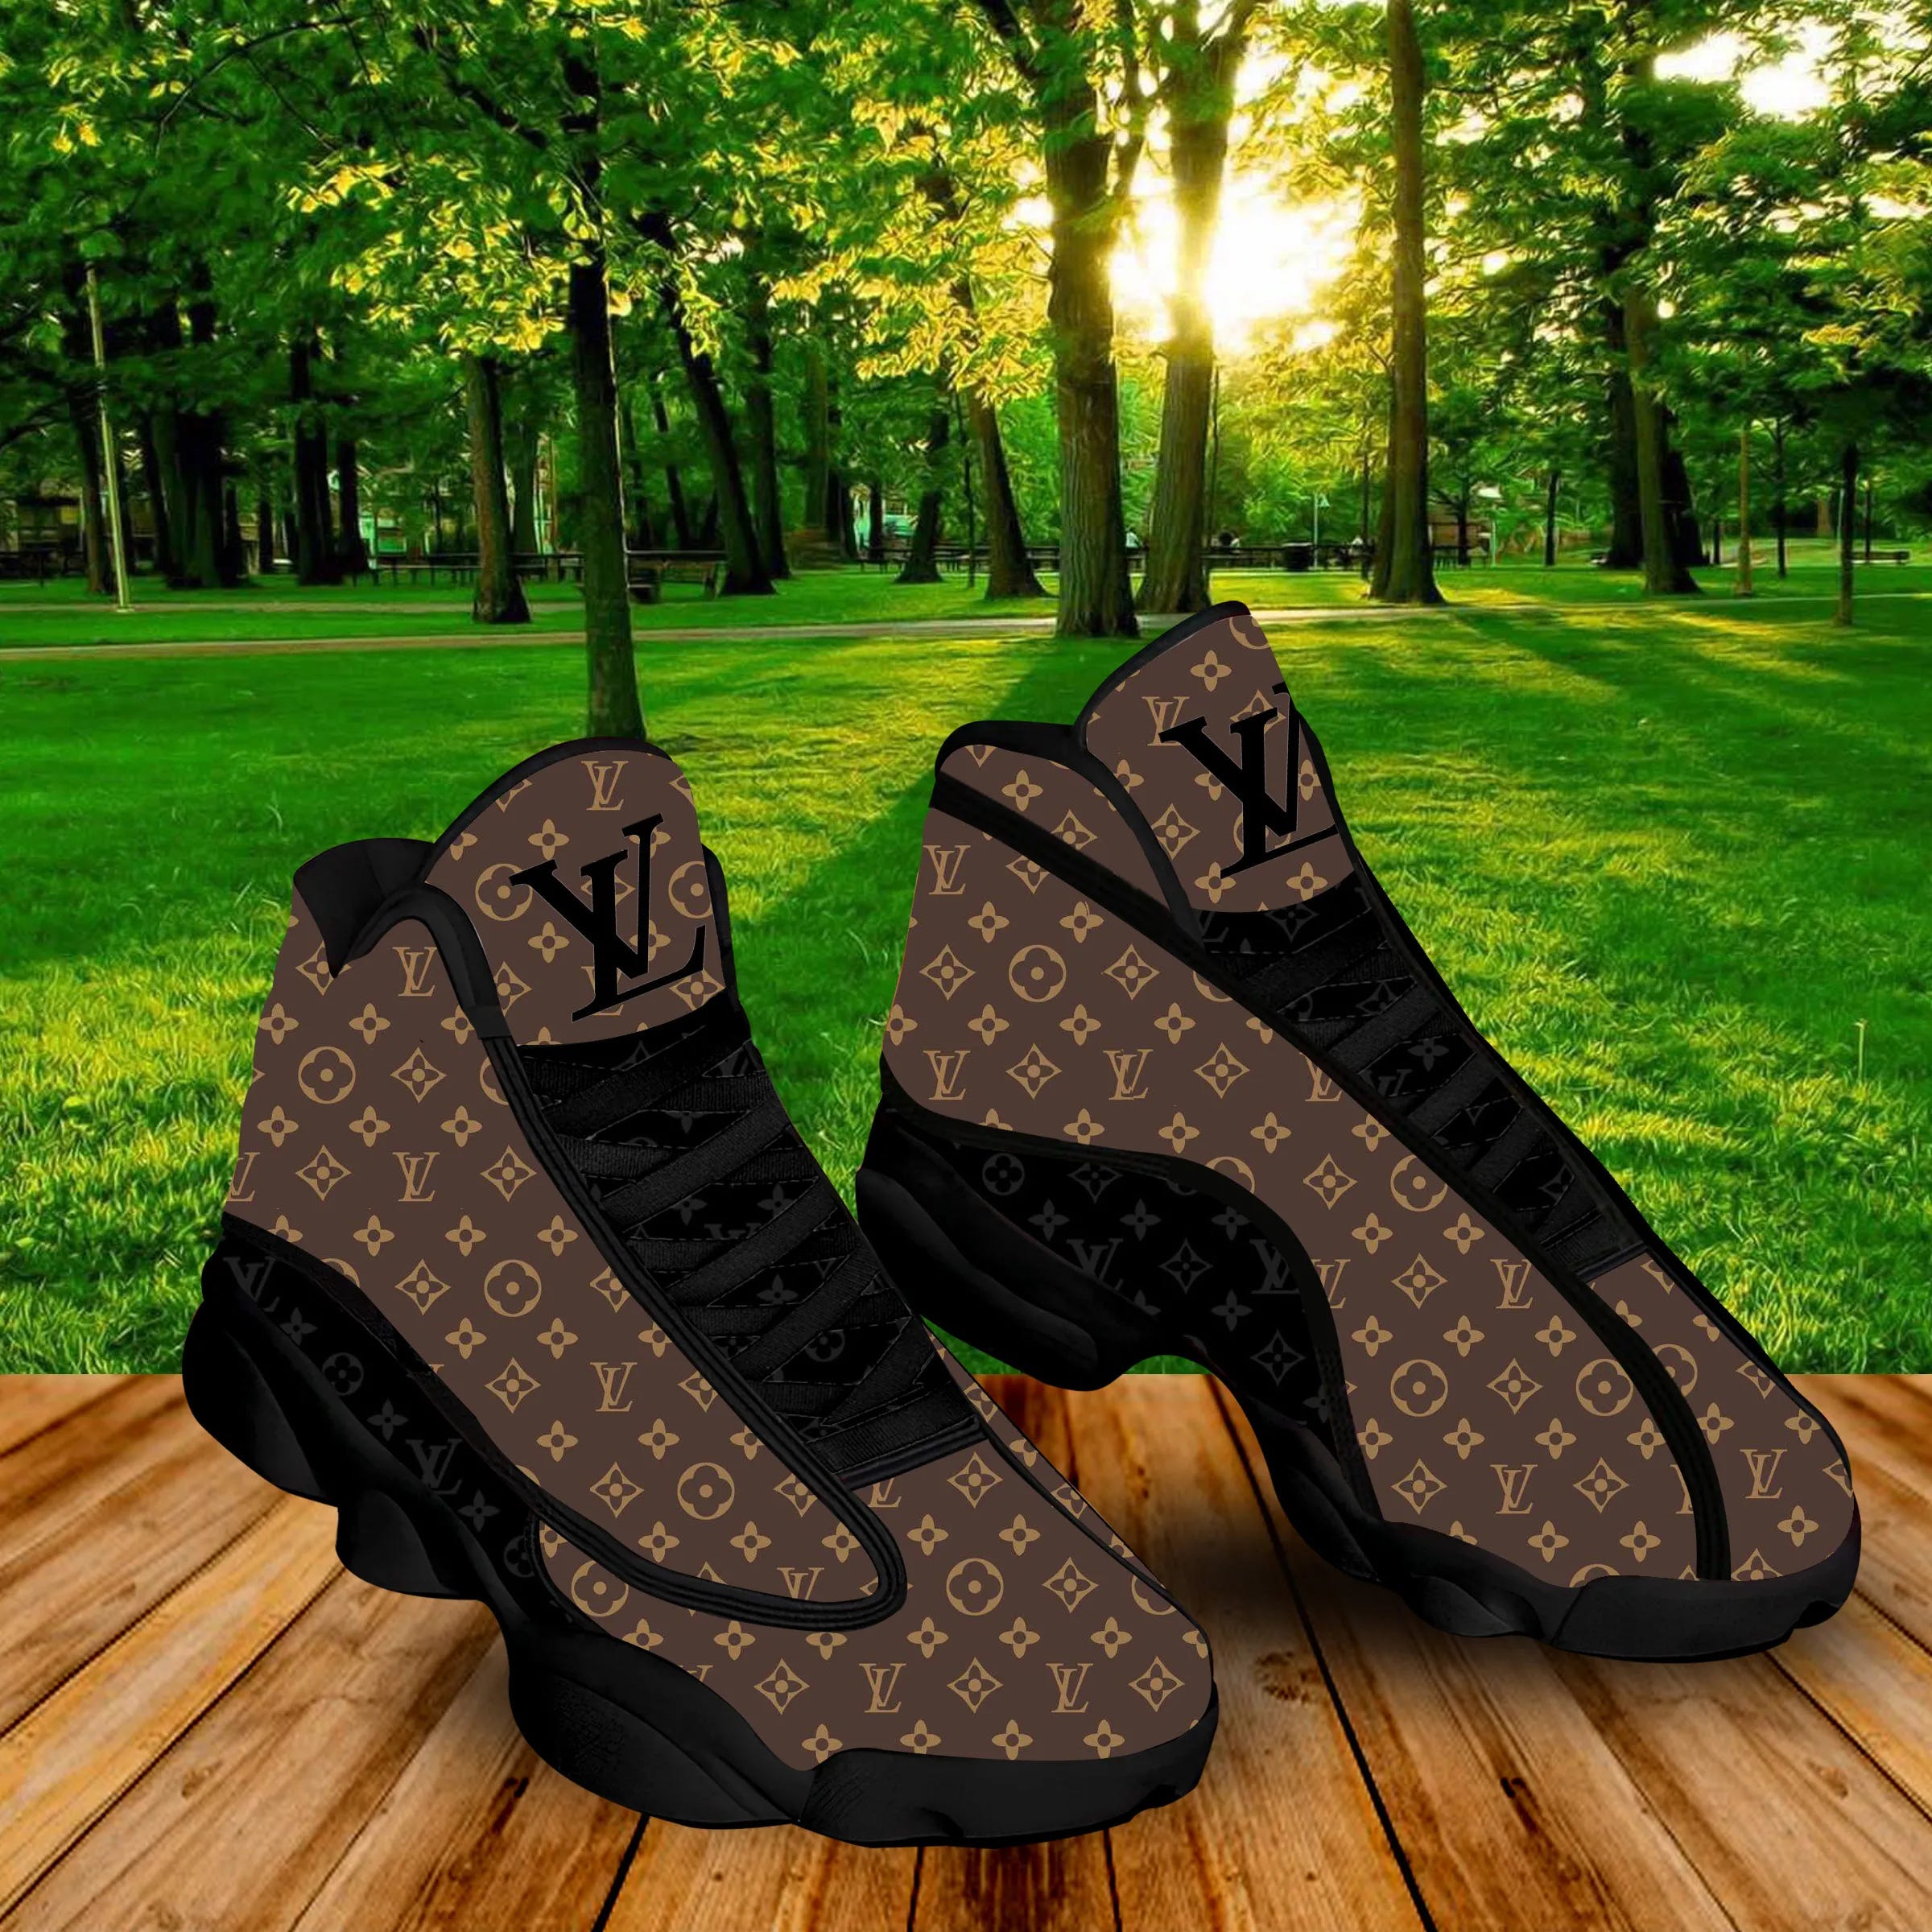 Louis Vuitton Men's LV Trail Sneaker